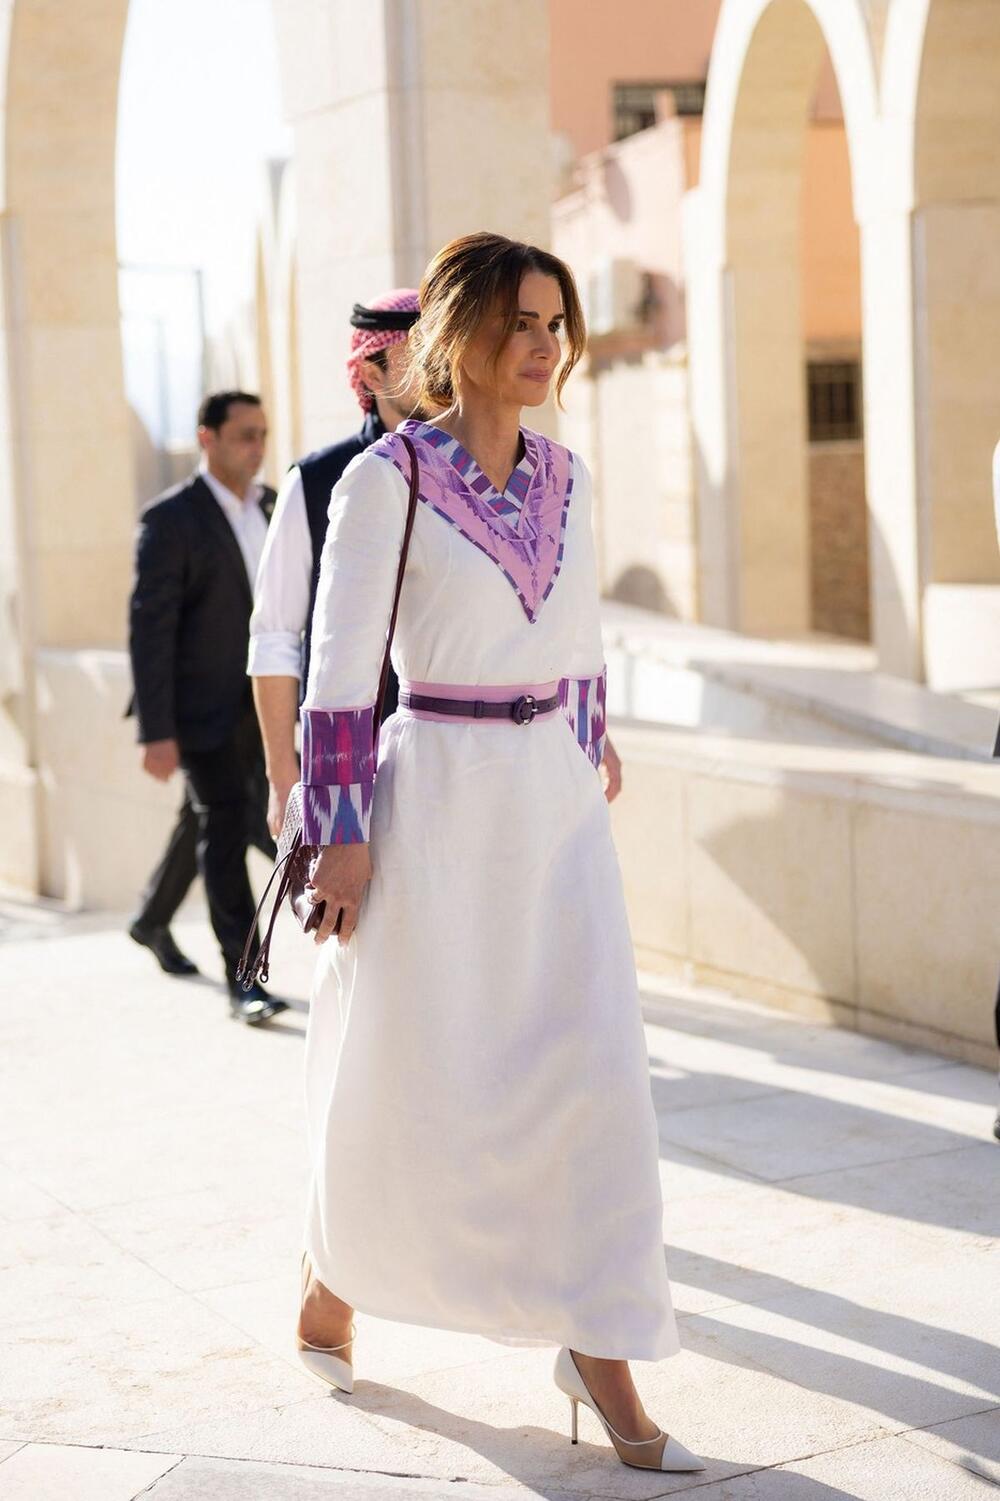 Kraljica Ranija od Jordana u tradicionalnoj jordanskoj haljini